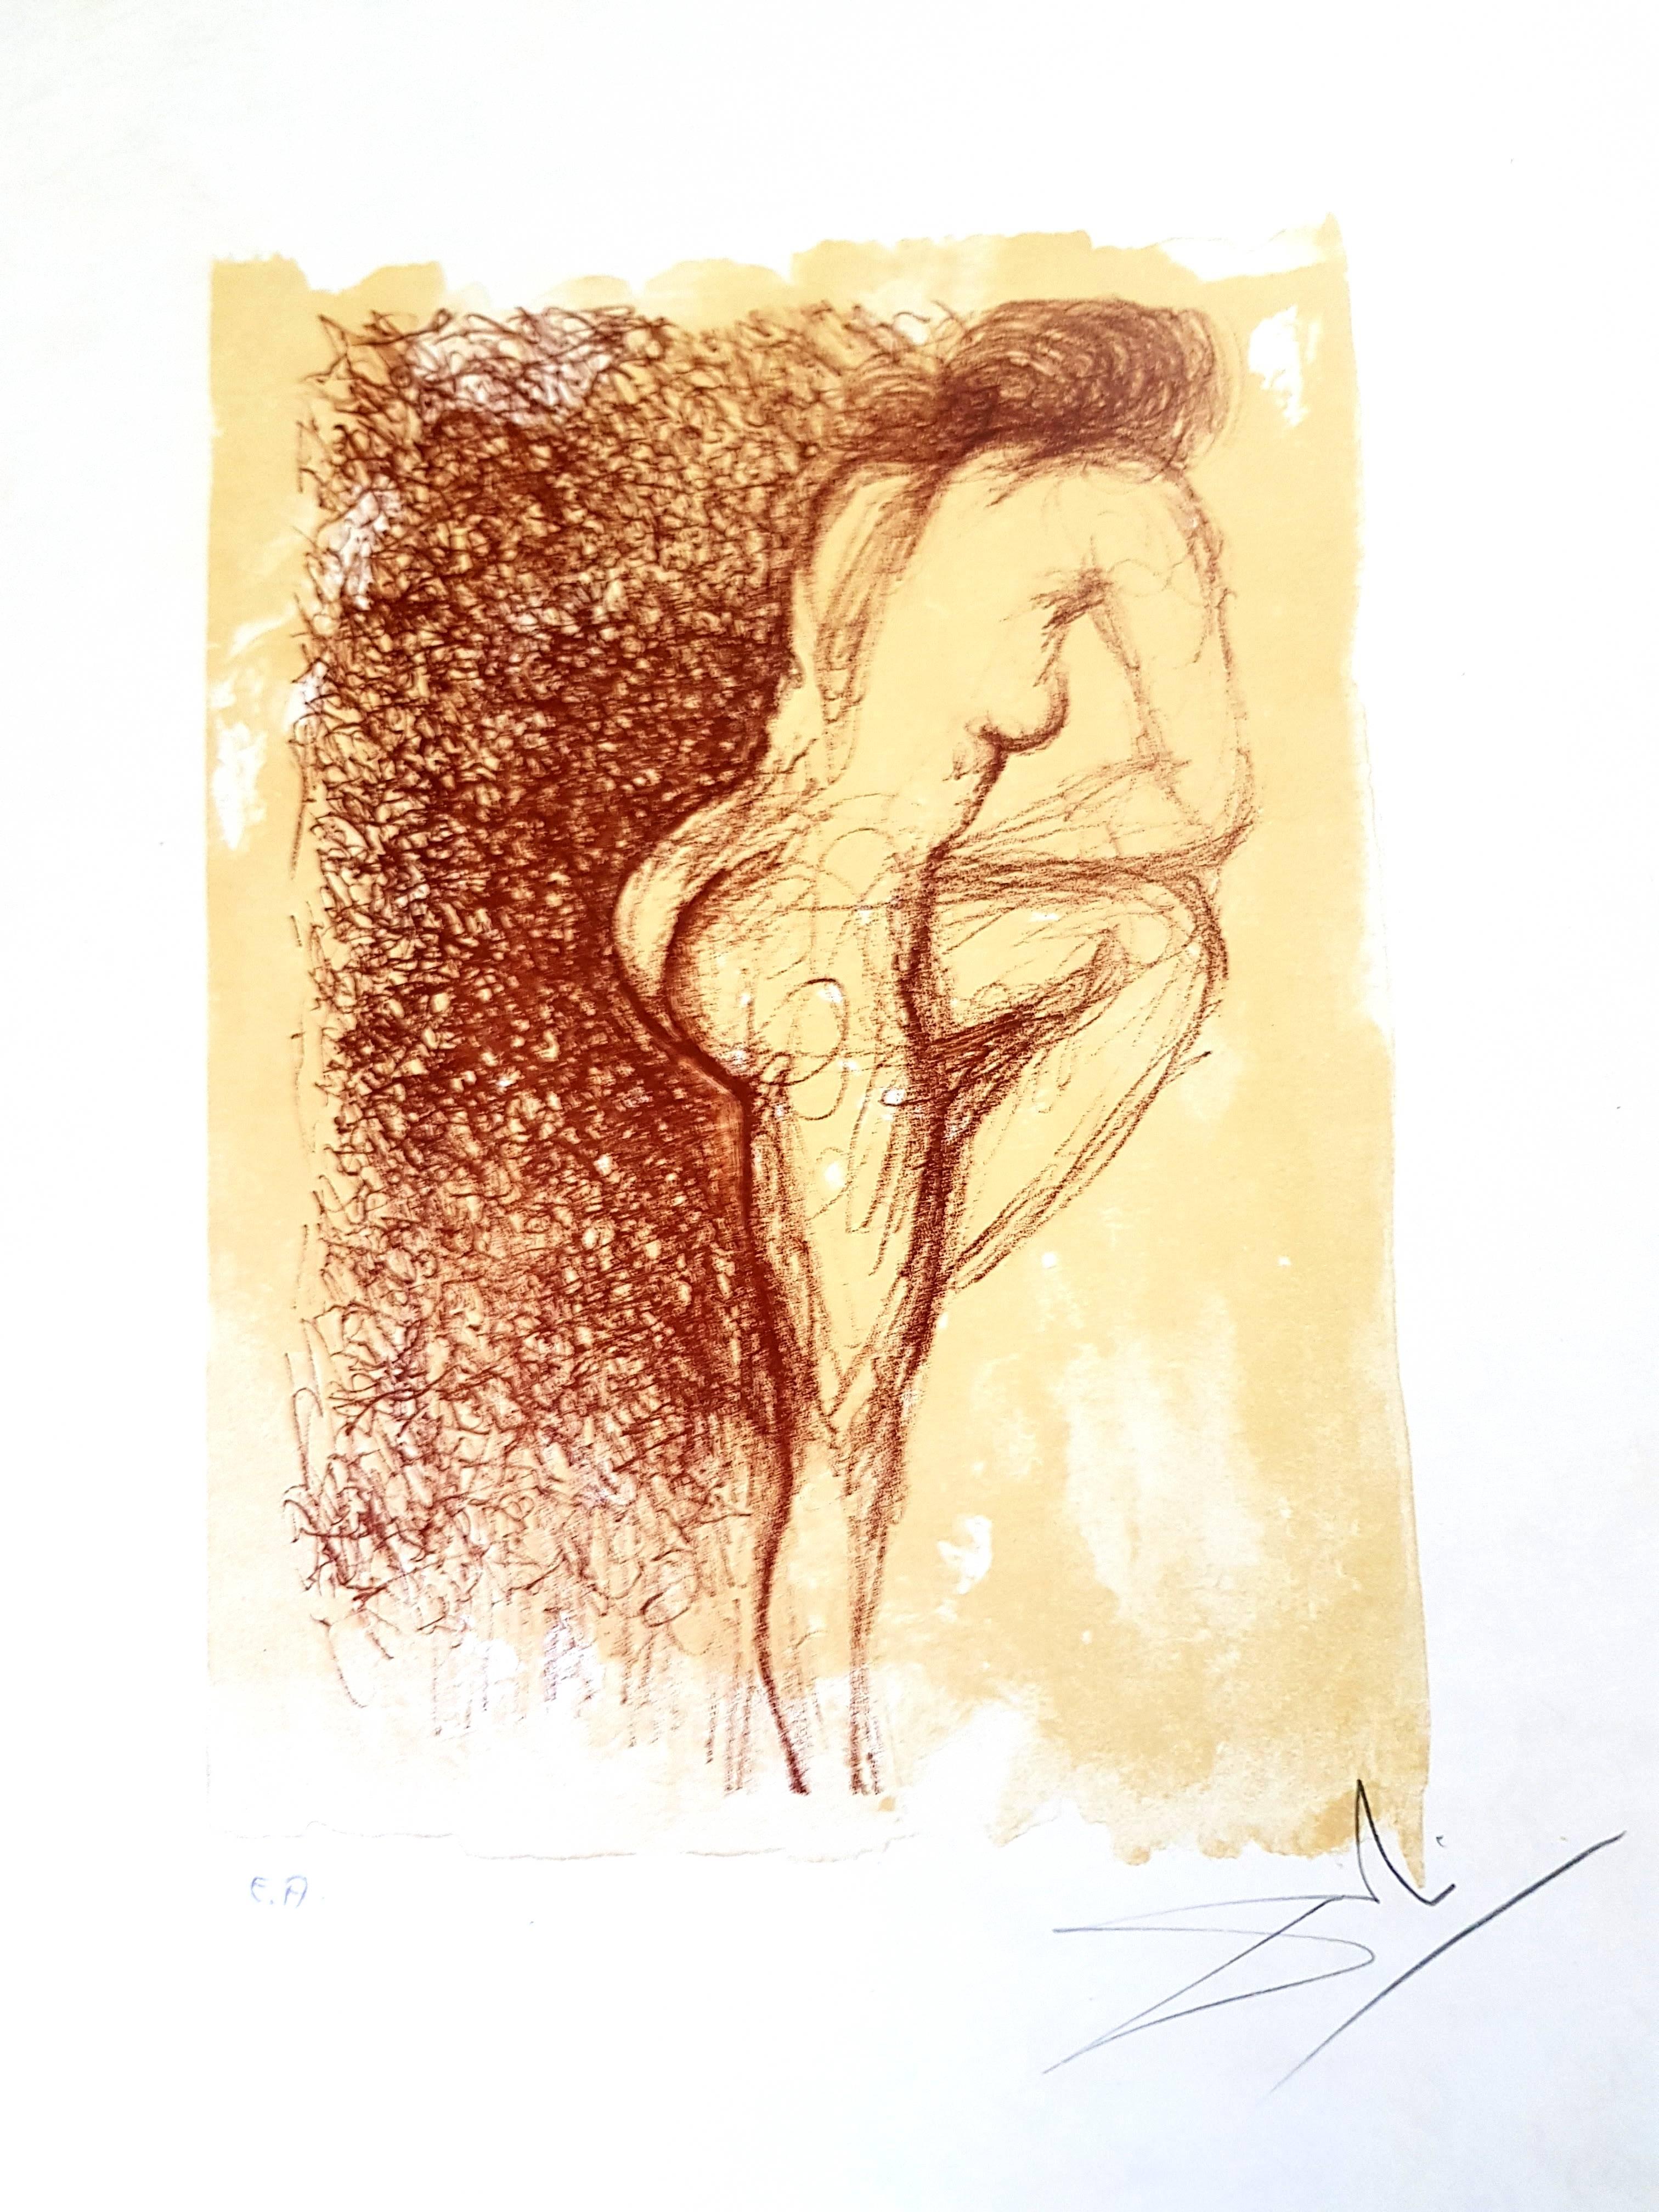 Salvador Dalí Nude Print - Salvador Dali - Gala - Original Handsigned Lithograph